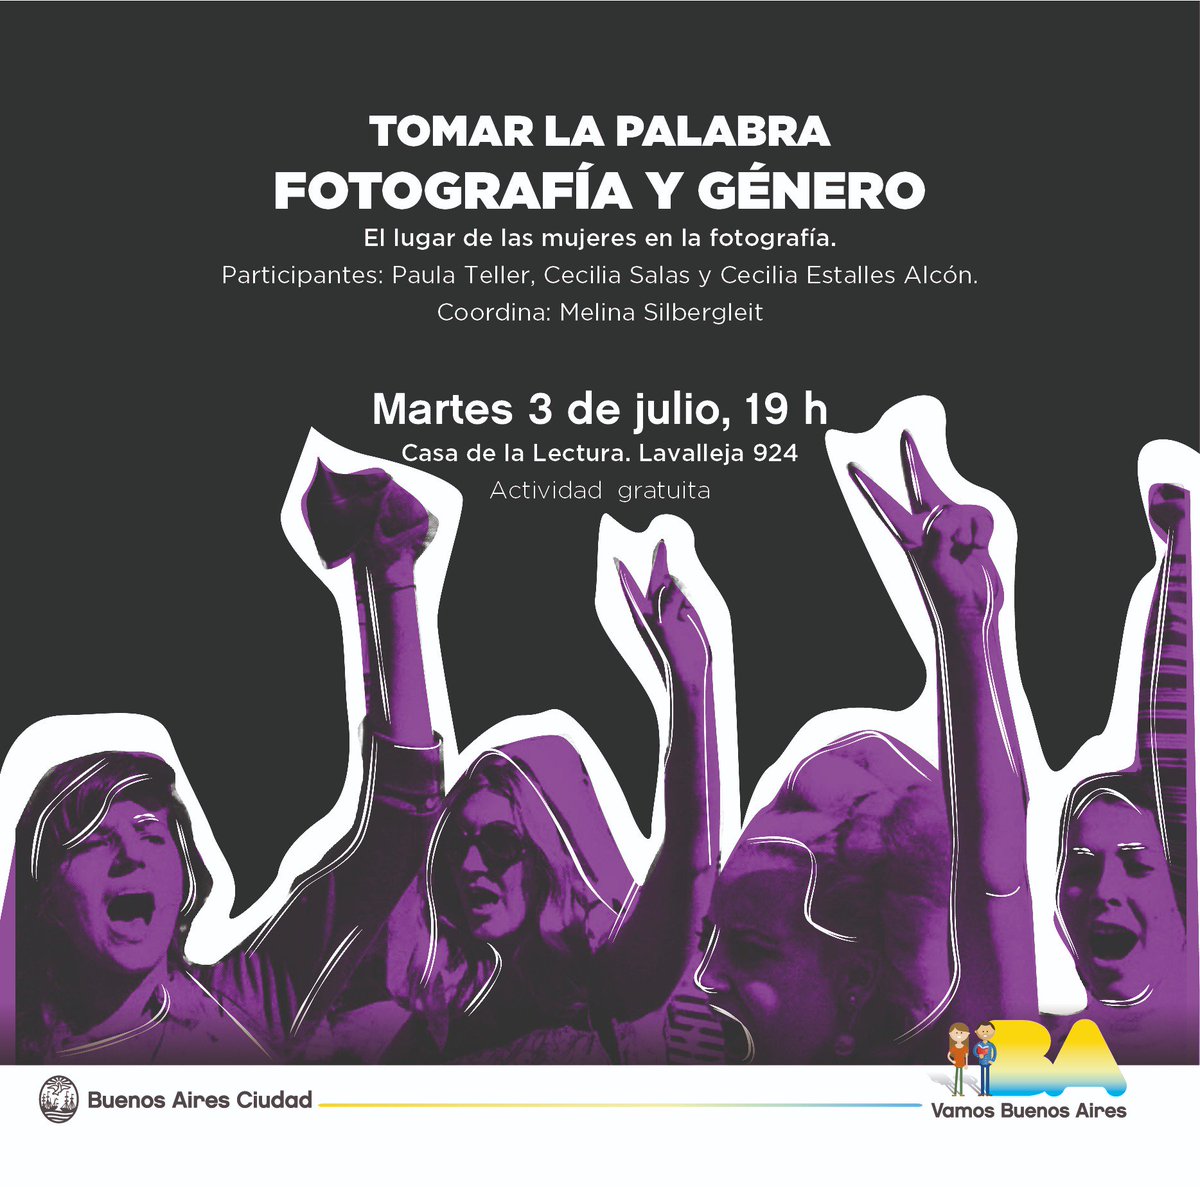 #Tomarlapalabra #FotografíayGénero Mañana continúa TOMAR LA PALABRA, ciclo coordinado por @melisilber. A las 19h conversan Ceci Salas, Cecilia Estalles Alcón y Paula Teller sobre el lugar de las mujeres en la fotografía.